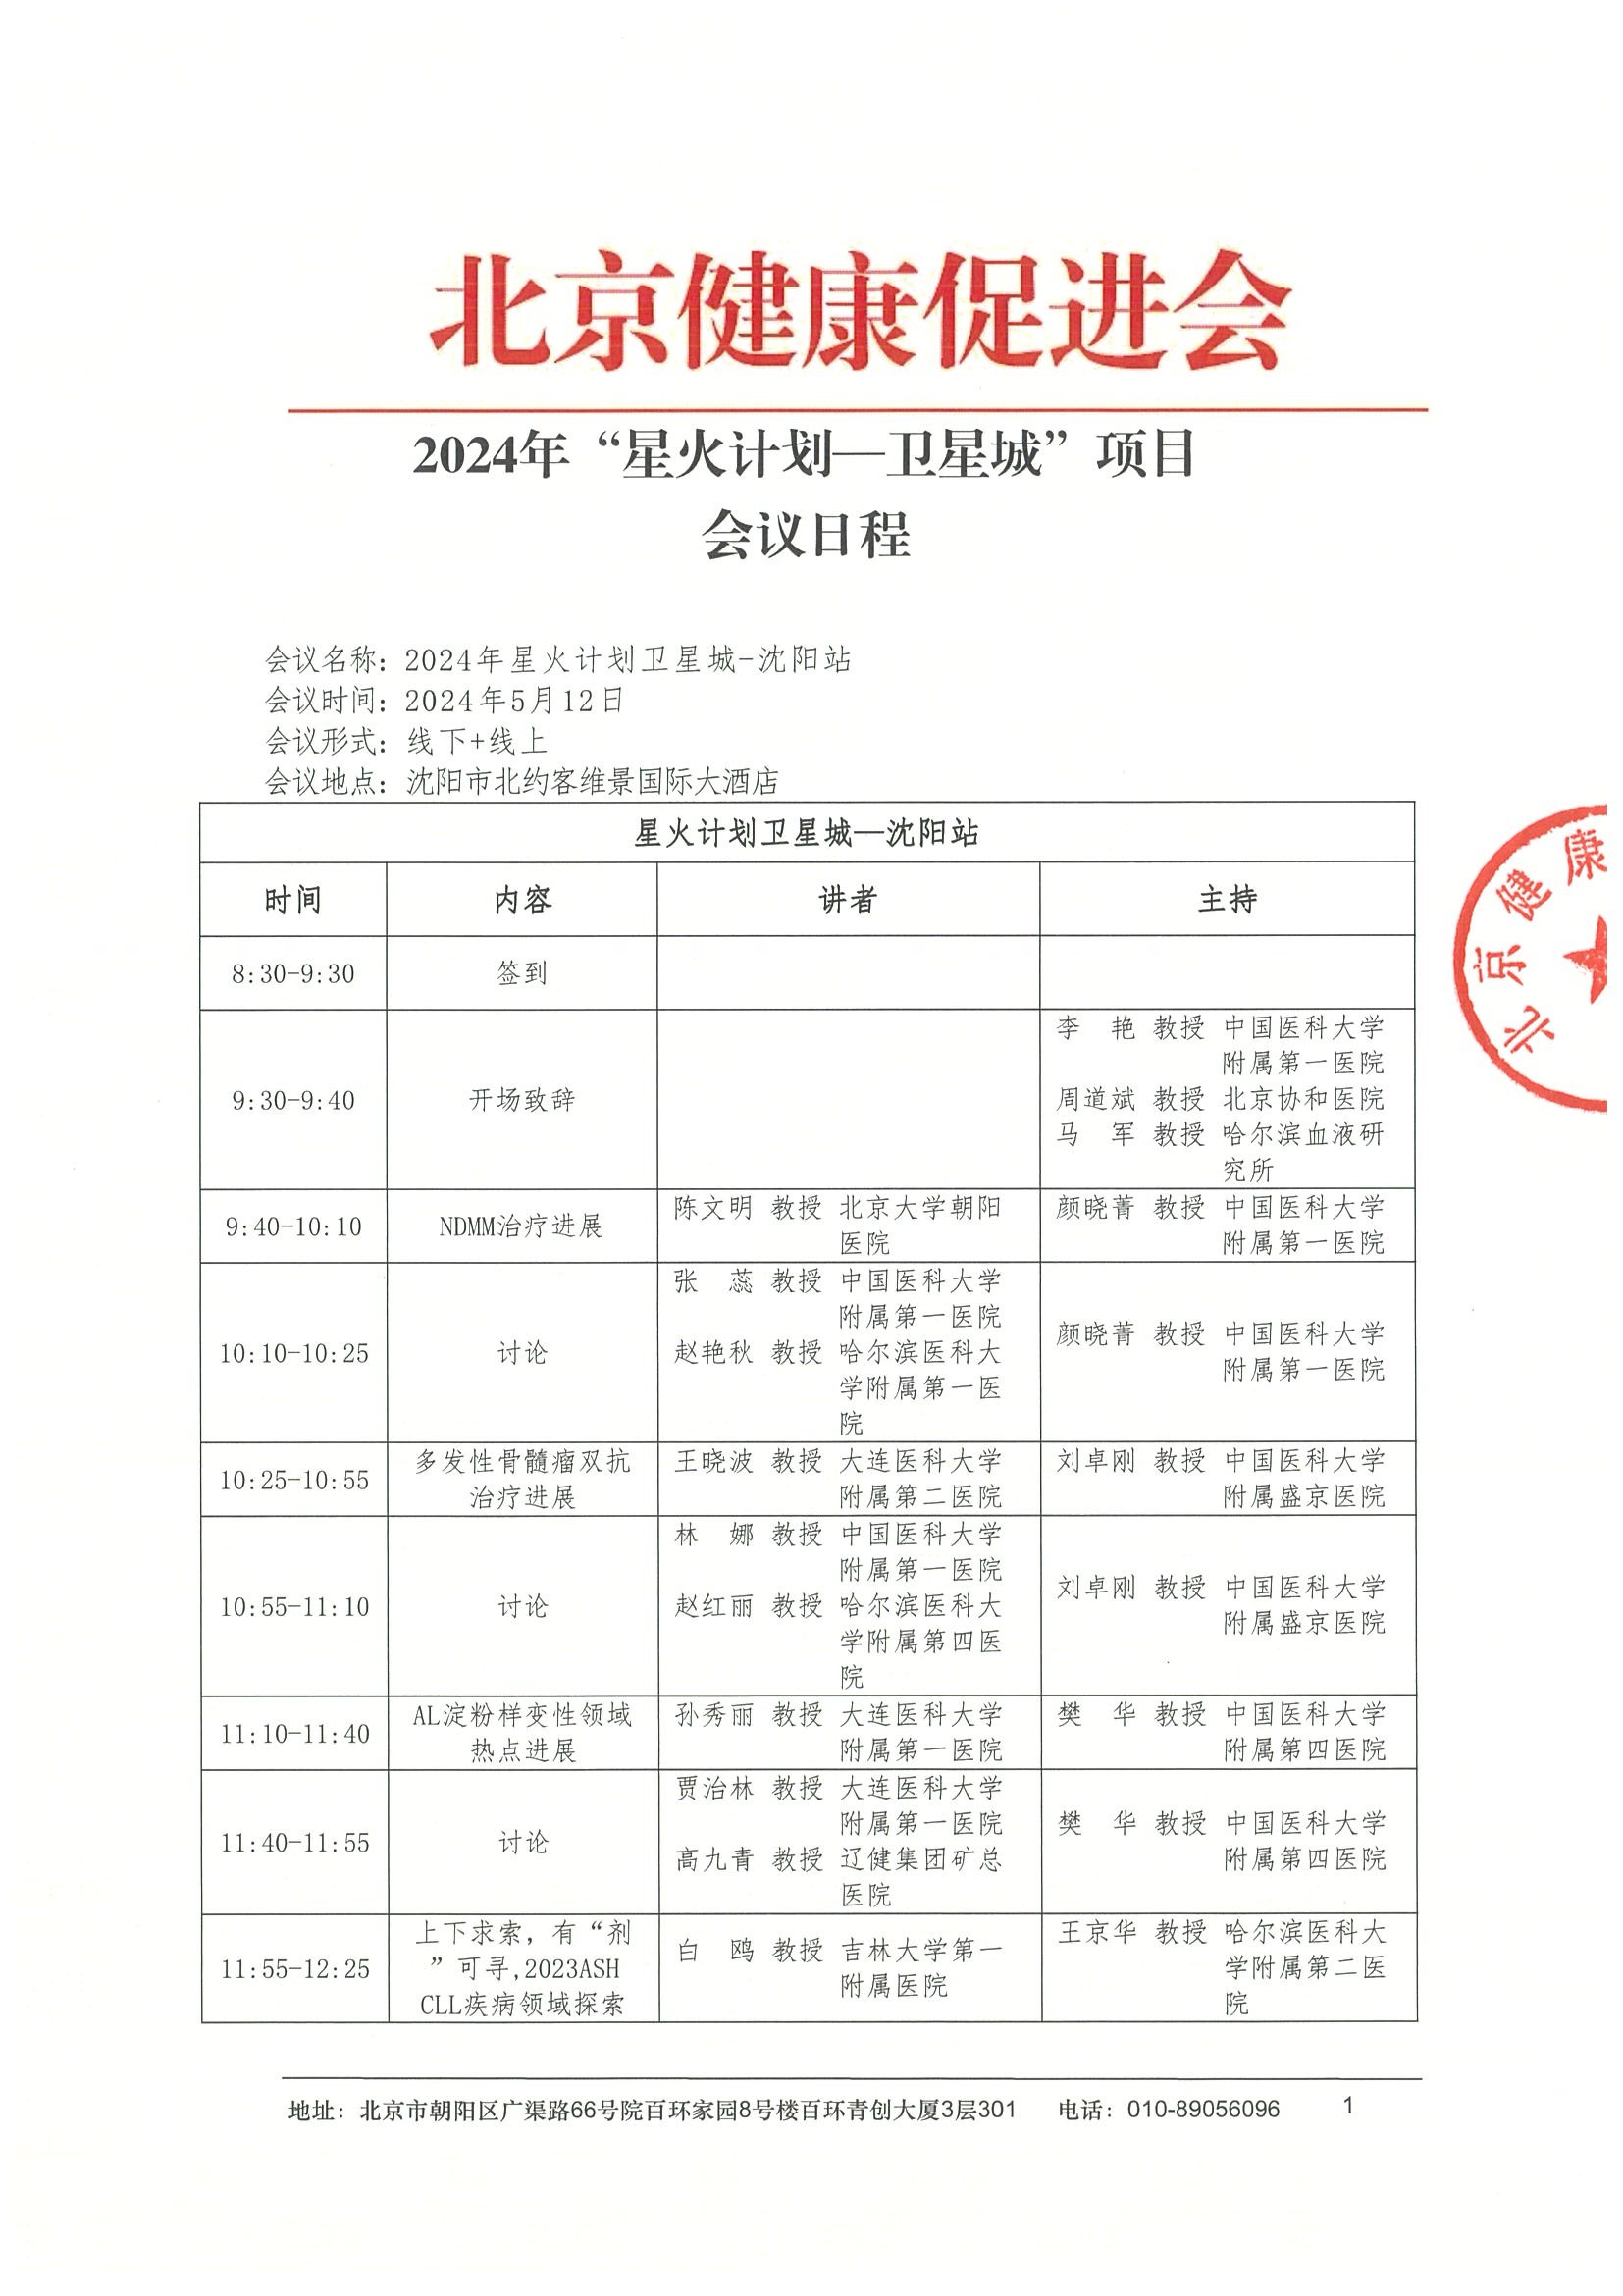 日程-2024“星火计划卫星城-沈阳站第二场”项目.jpeg